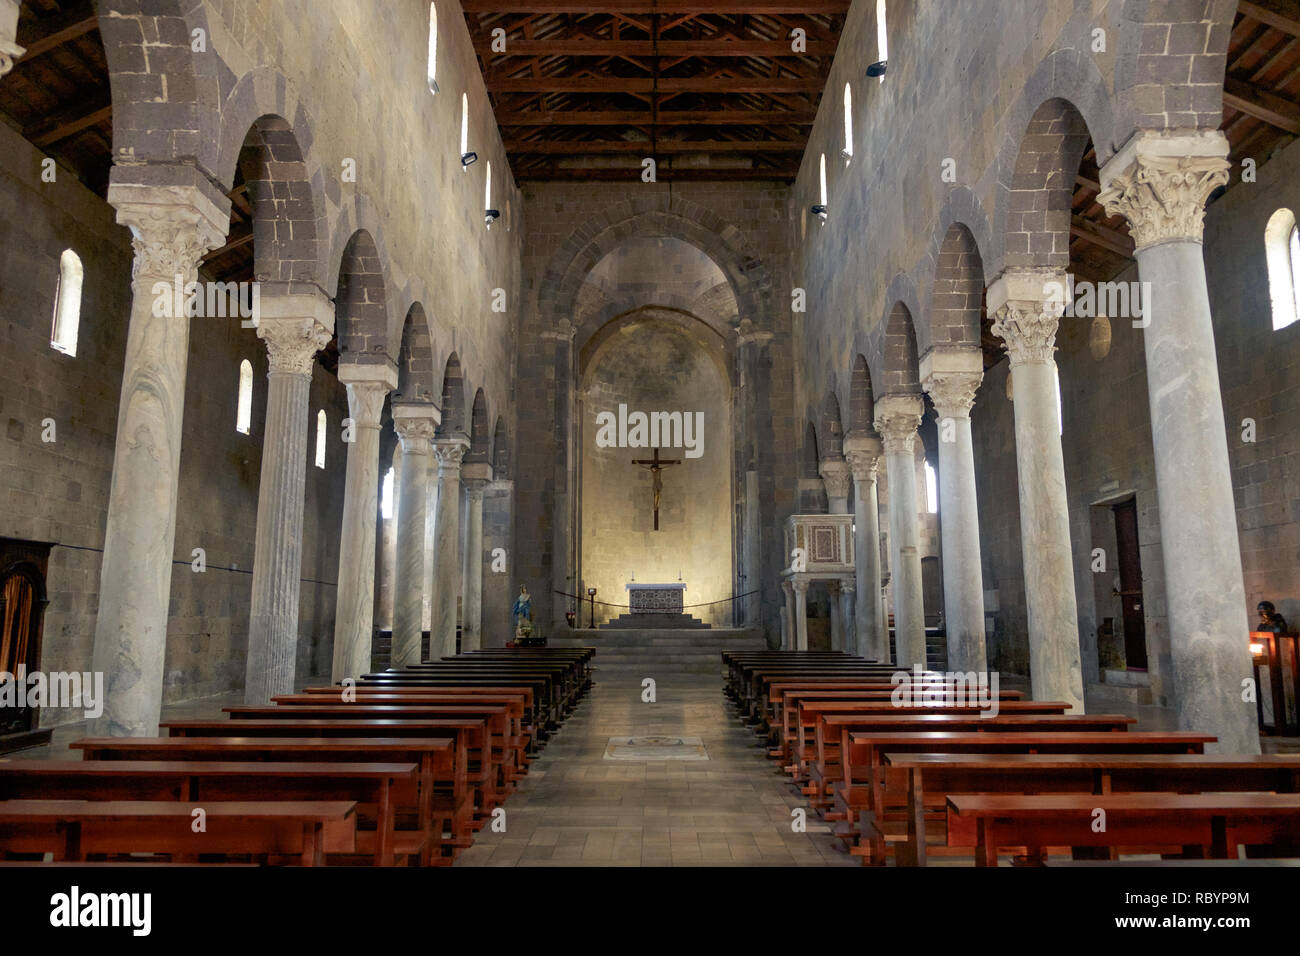 La cathédrale romane de Casertavecchia est un chef-d'œuvre dans la région de Campanie. Il a peu de décoration et dispose d'un impressionnant, style mystique. Banque D'Images